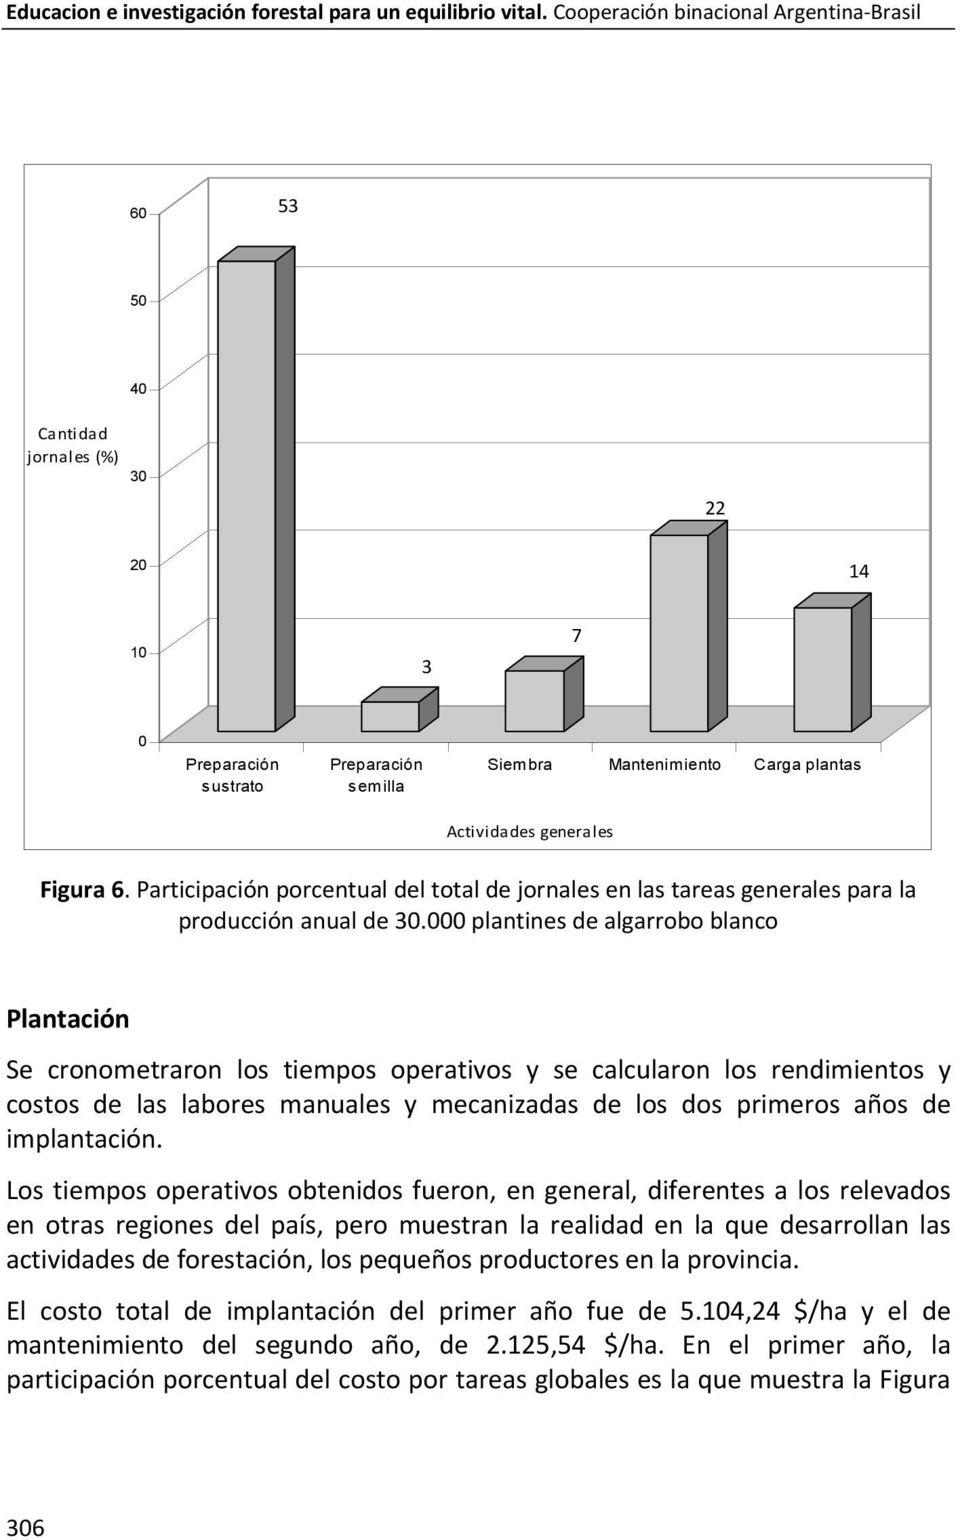 Figura 6. Participación porcentual del total de jornales en las tareas generales para la producción anual de 30.